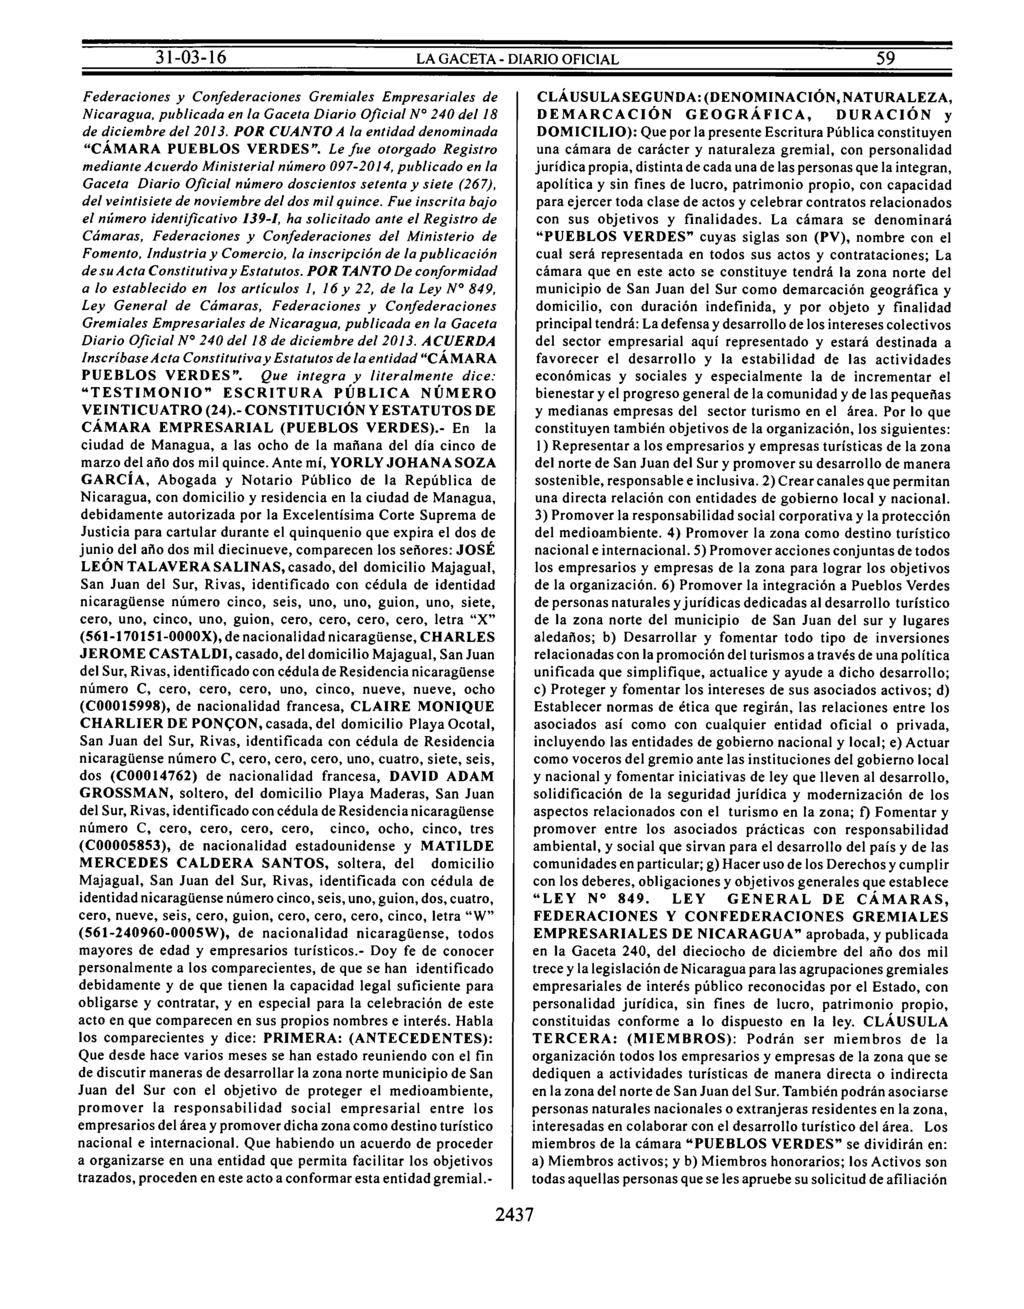 Federaciones y Confederaciones Gremiales Empresariales de Nicaragua, publicada en la Gaceta Diario Oficial N 240 del 18 de diciembre del 2013.